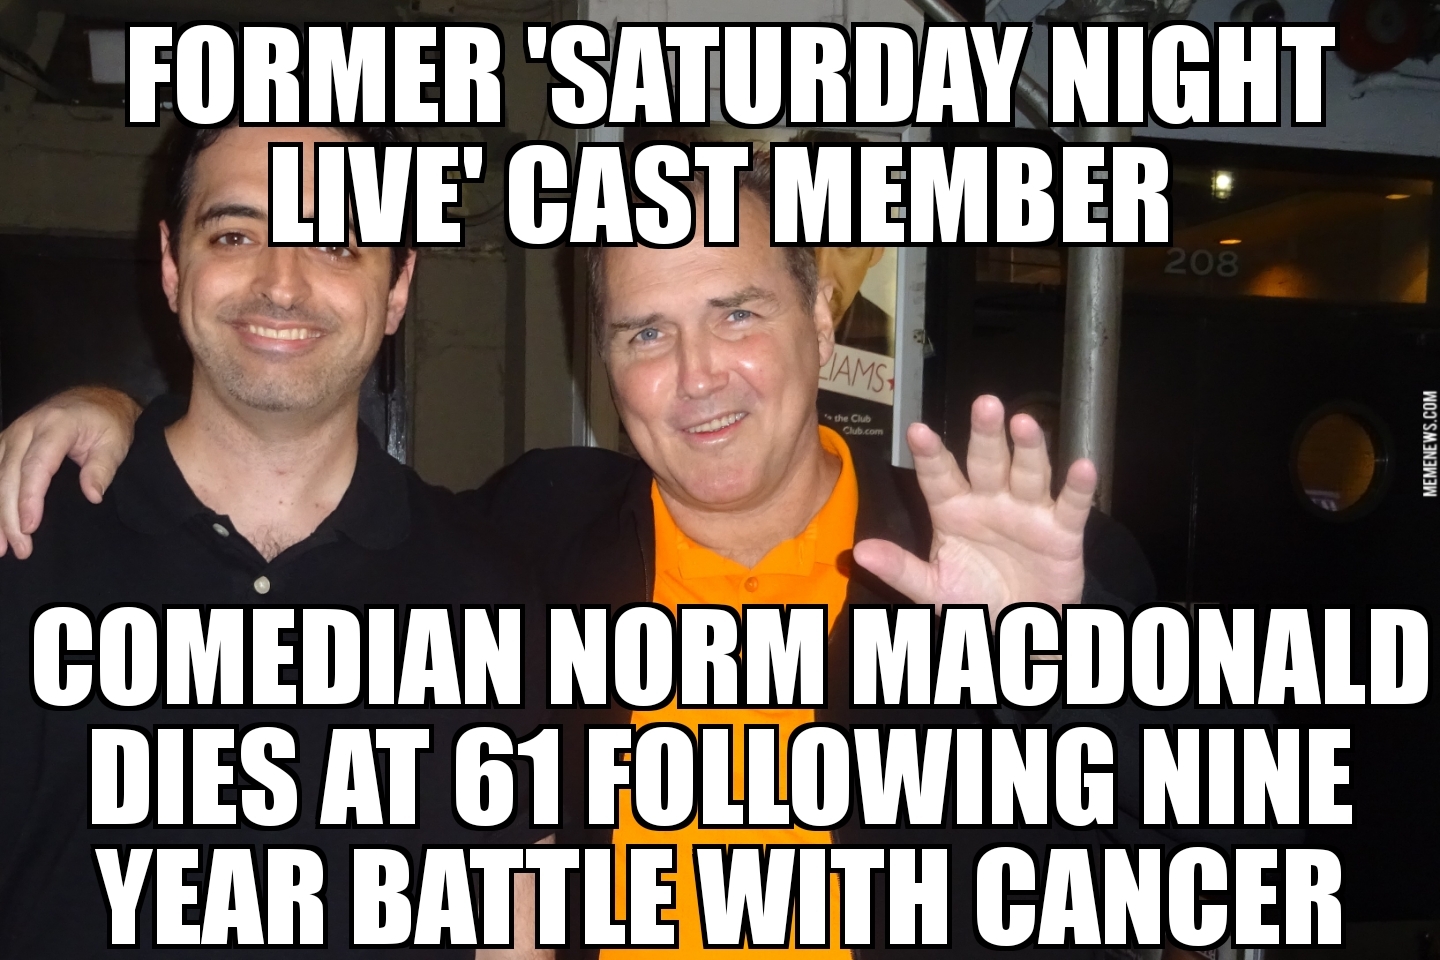 Norm Macdonald dies